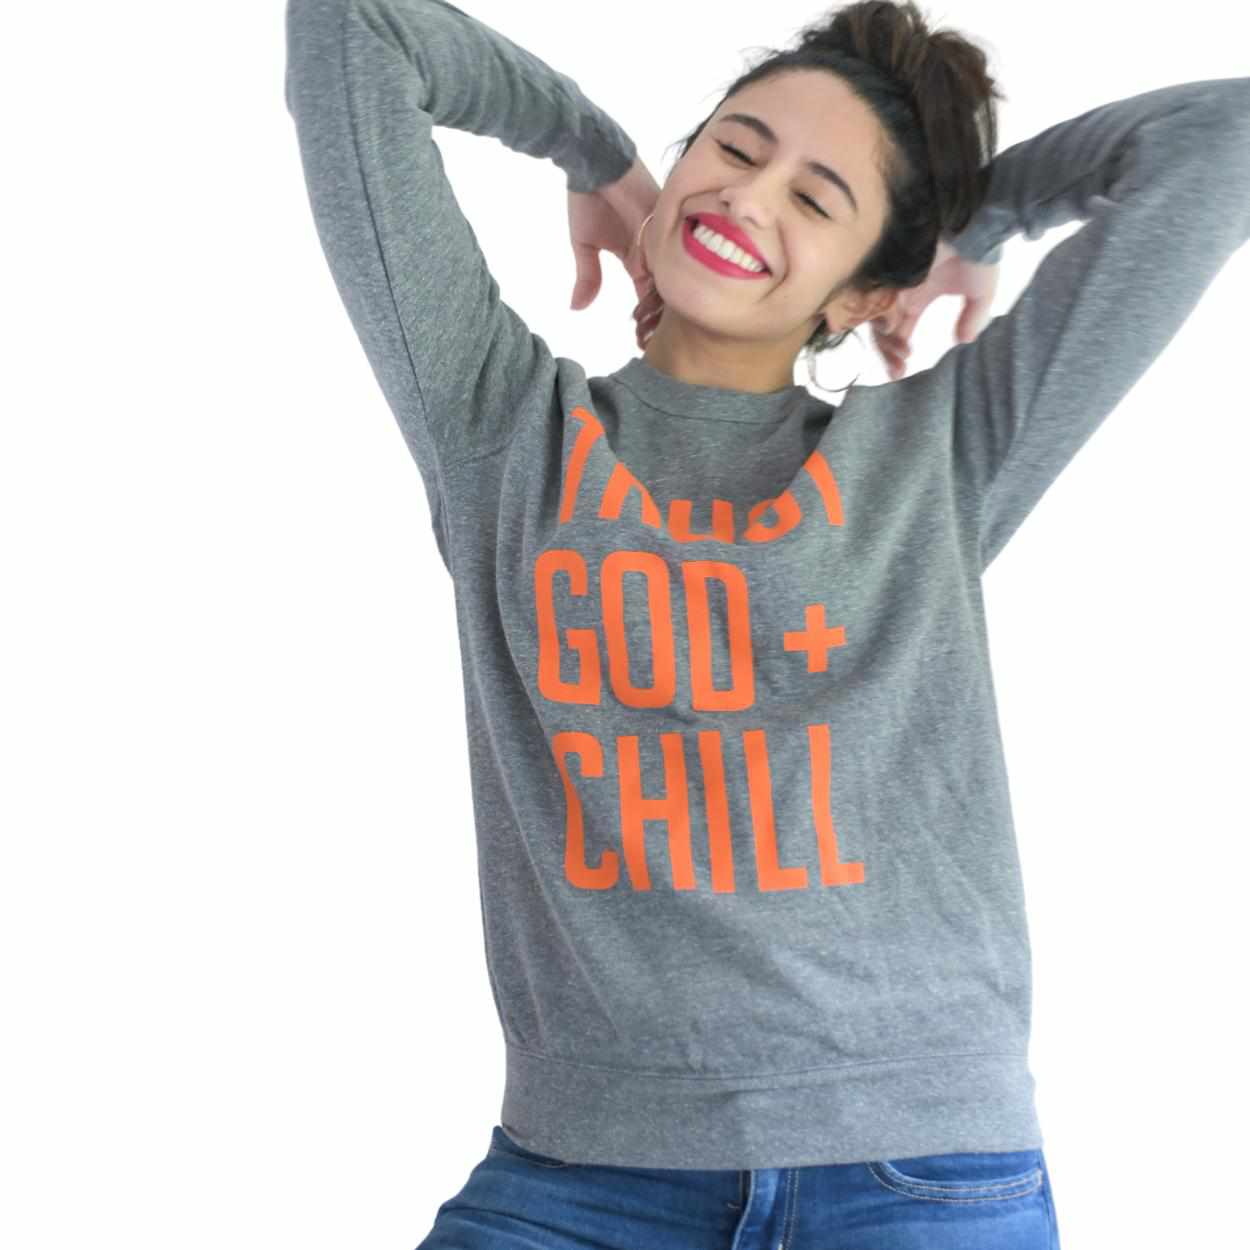  sweatshirt Godgirl Gifts